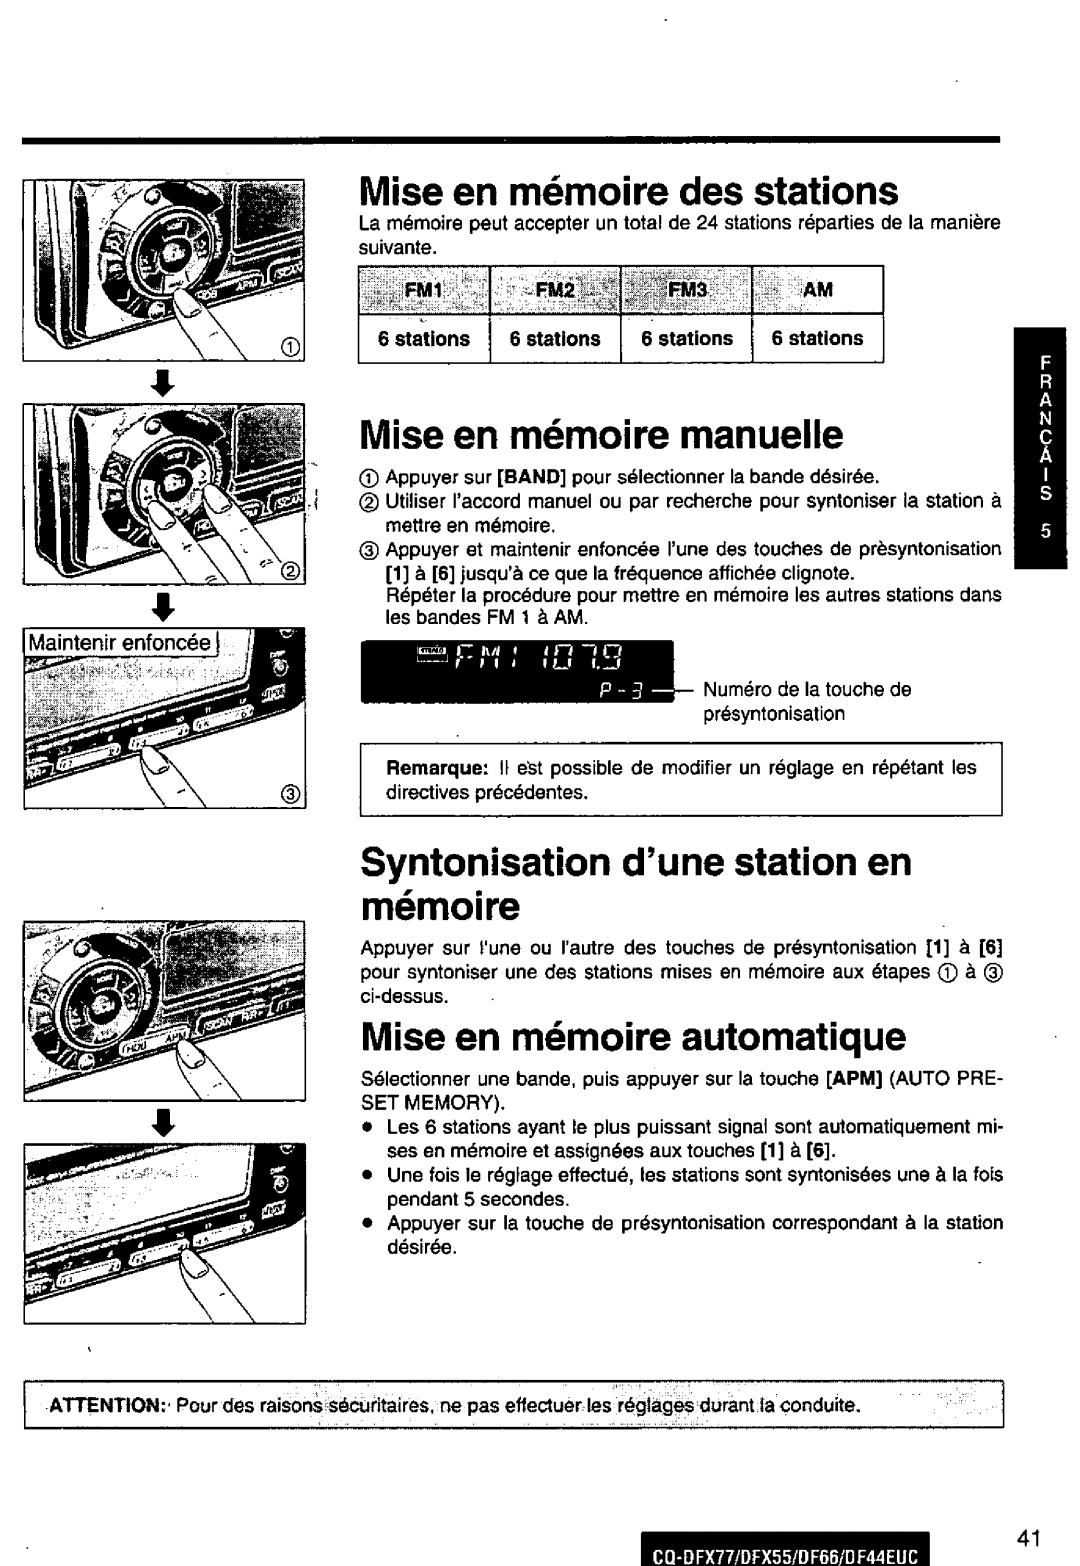 Panasonic DF66EUC, CQ-DFX77, DF44EUC, CQ-DFX55 manual 